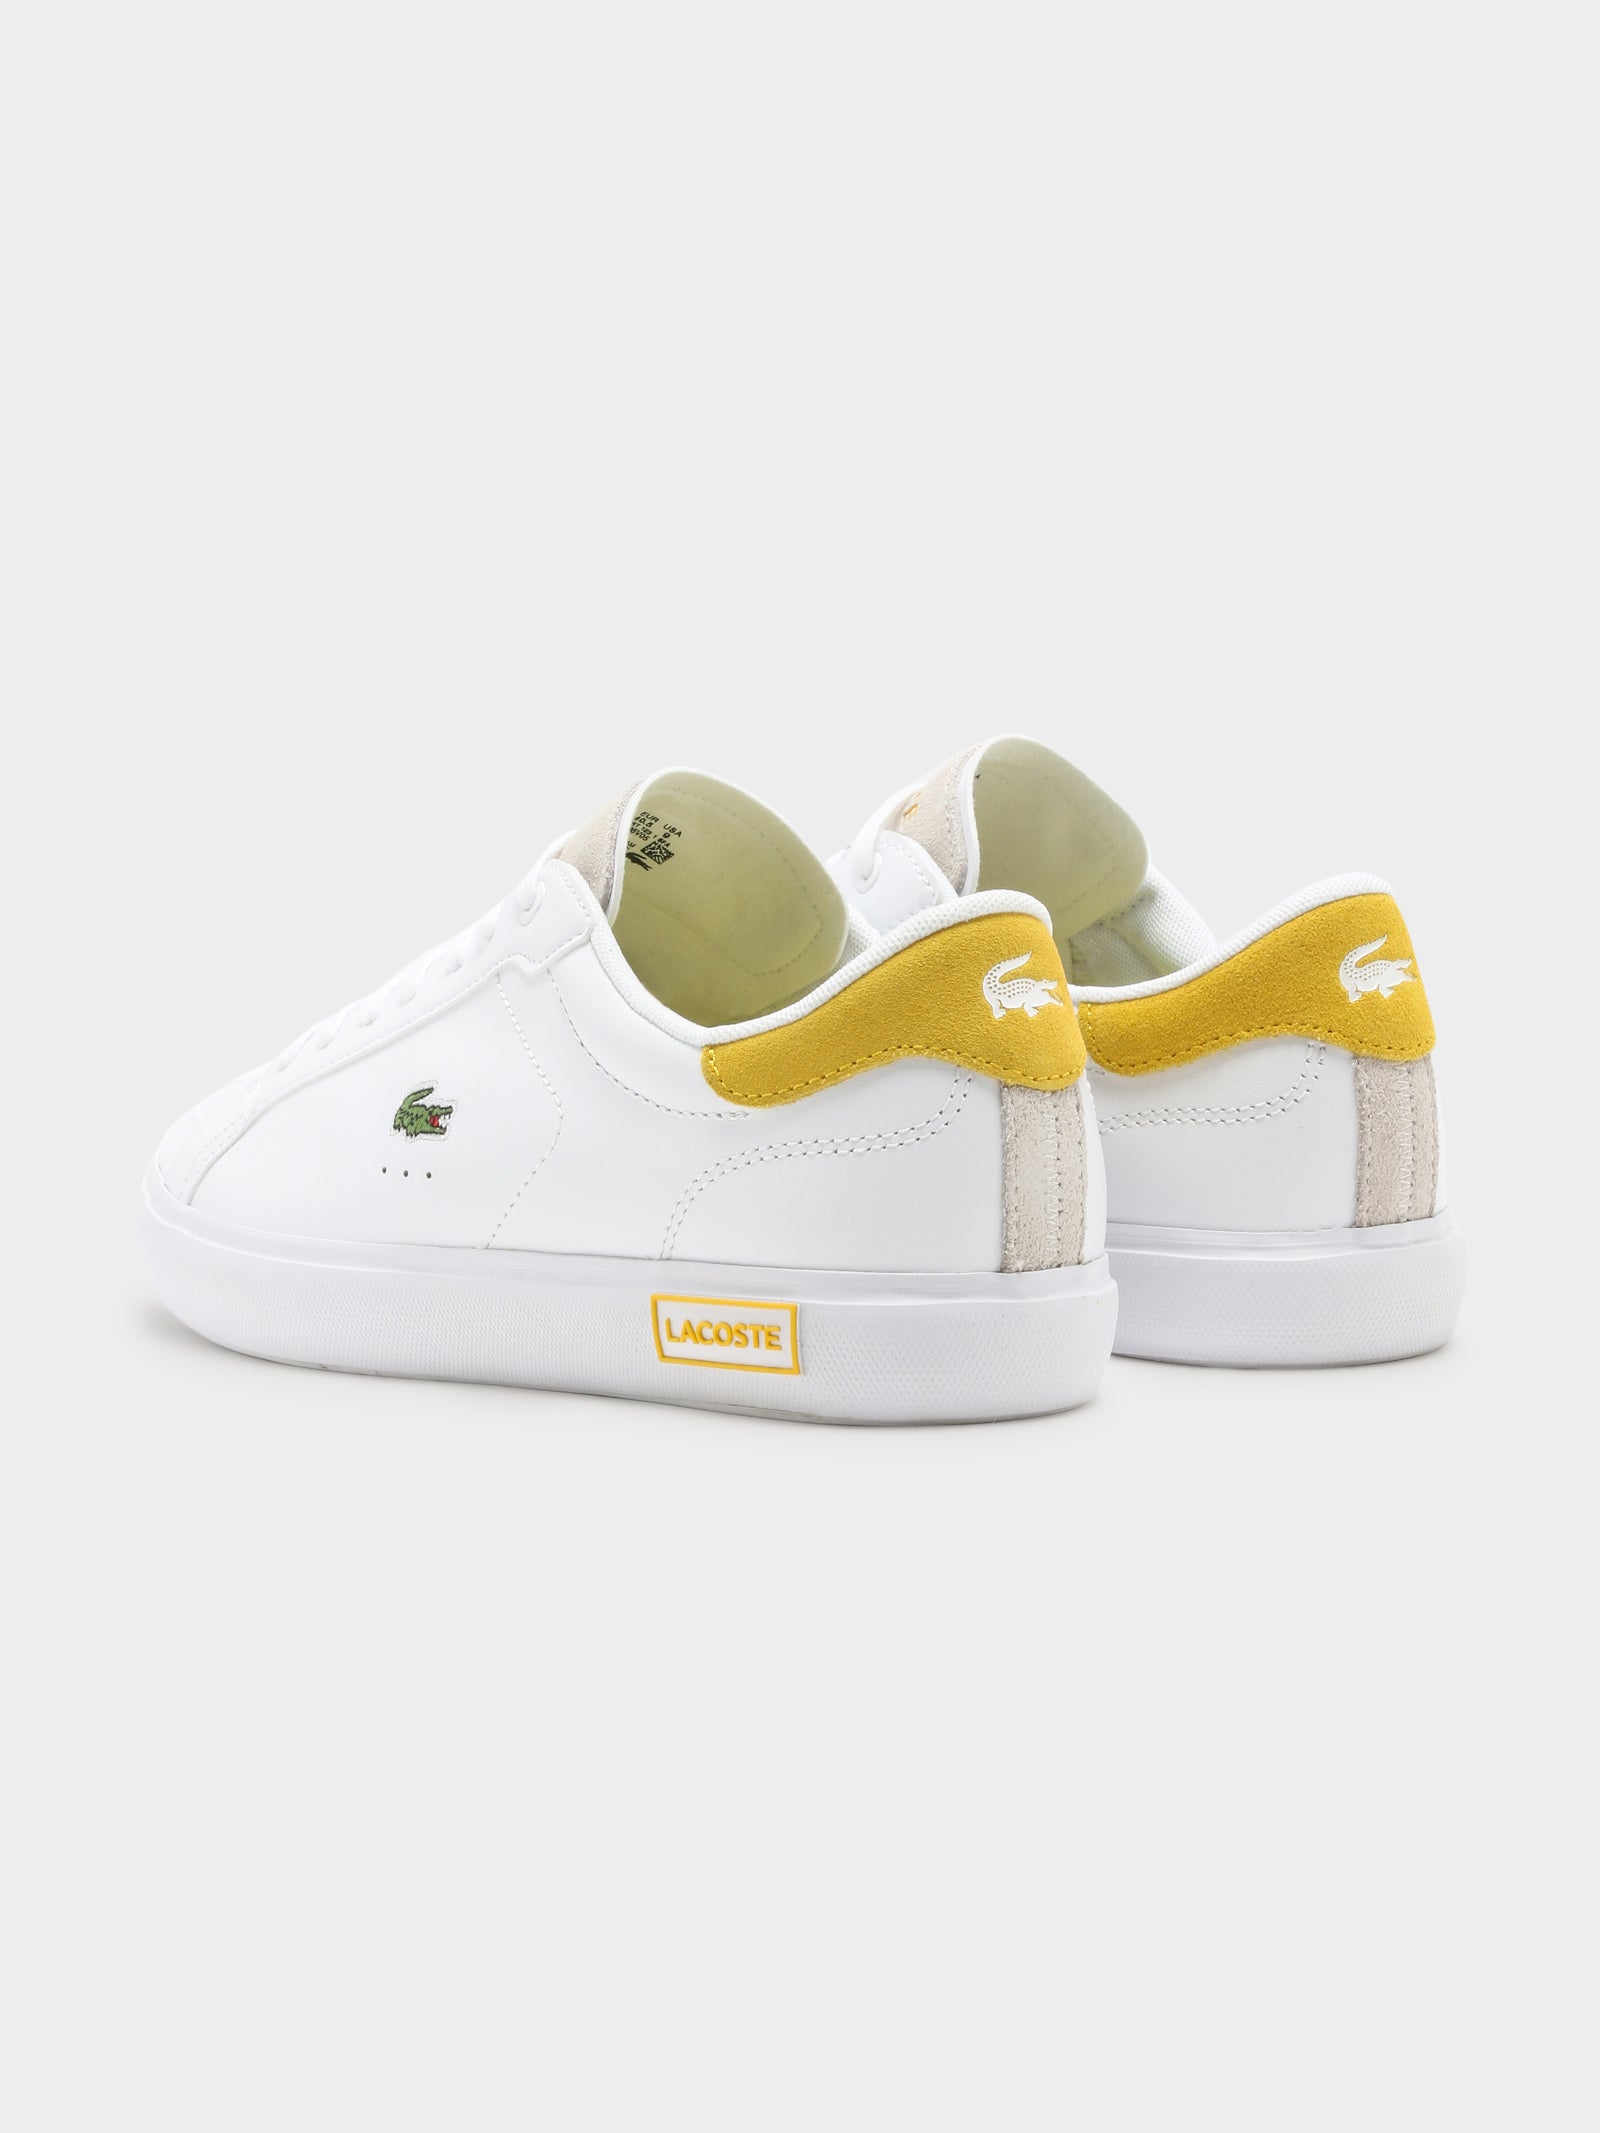 Womens Powercourt 123 Sneakers in White & Yellow - Glue Store